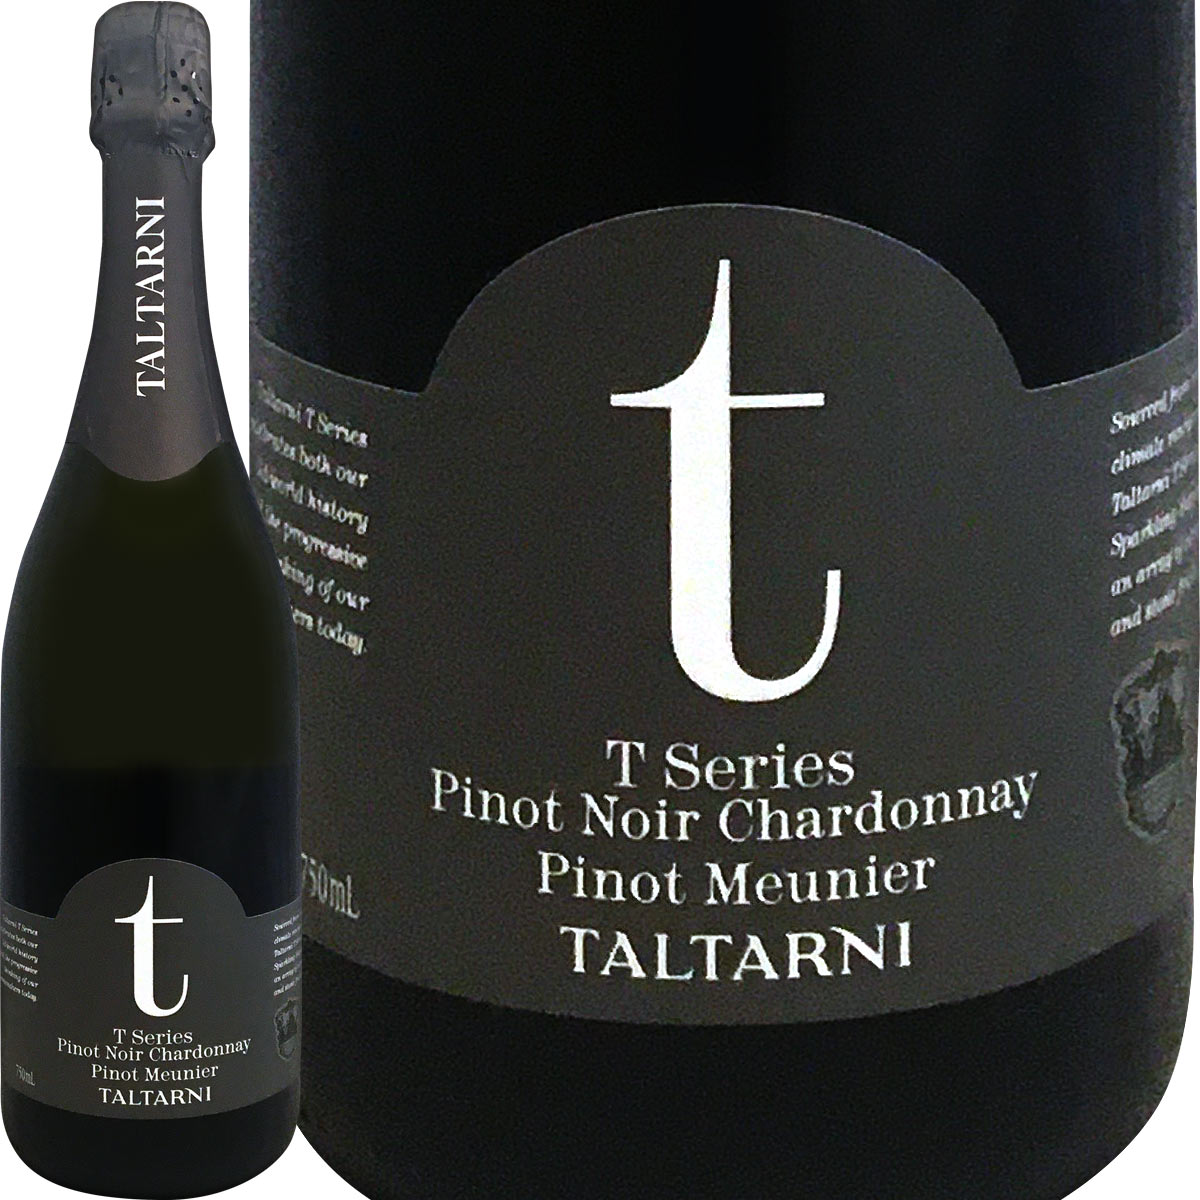 オーストラリア スパークリングワイン タルターニ・Tシリーズ・ブリュット【豪州を代表するスパーク生産者が造るスパーク!!】【オーストラリア】【白スパークリングワイン】【750ml】【辛口】【Taltarni】